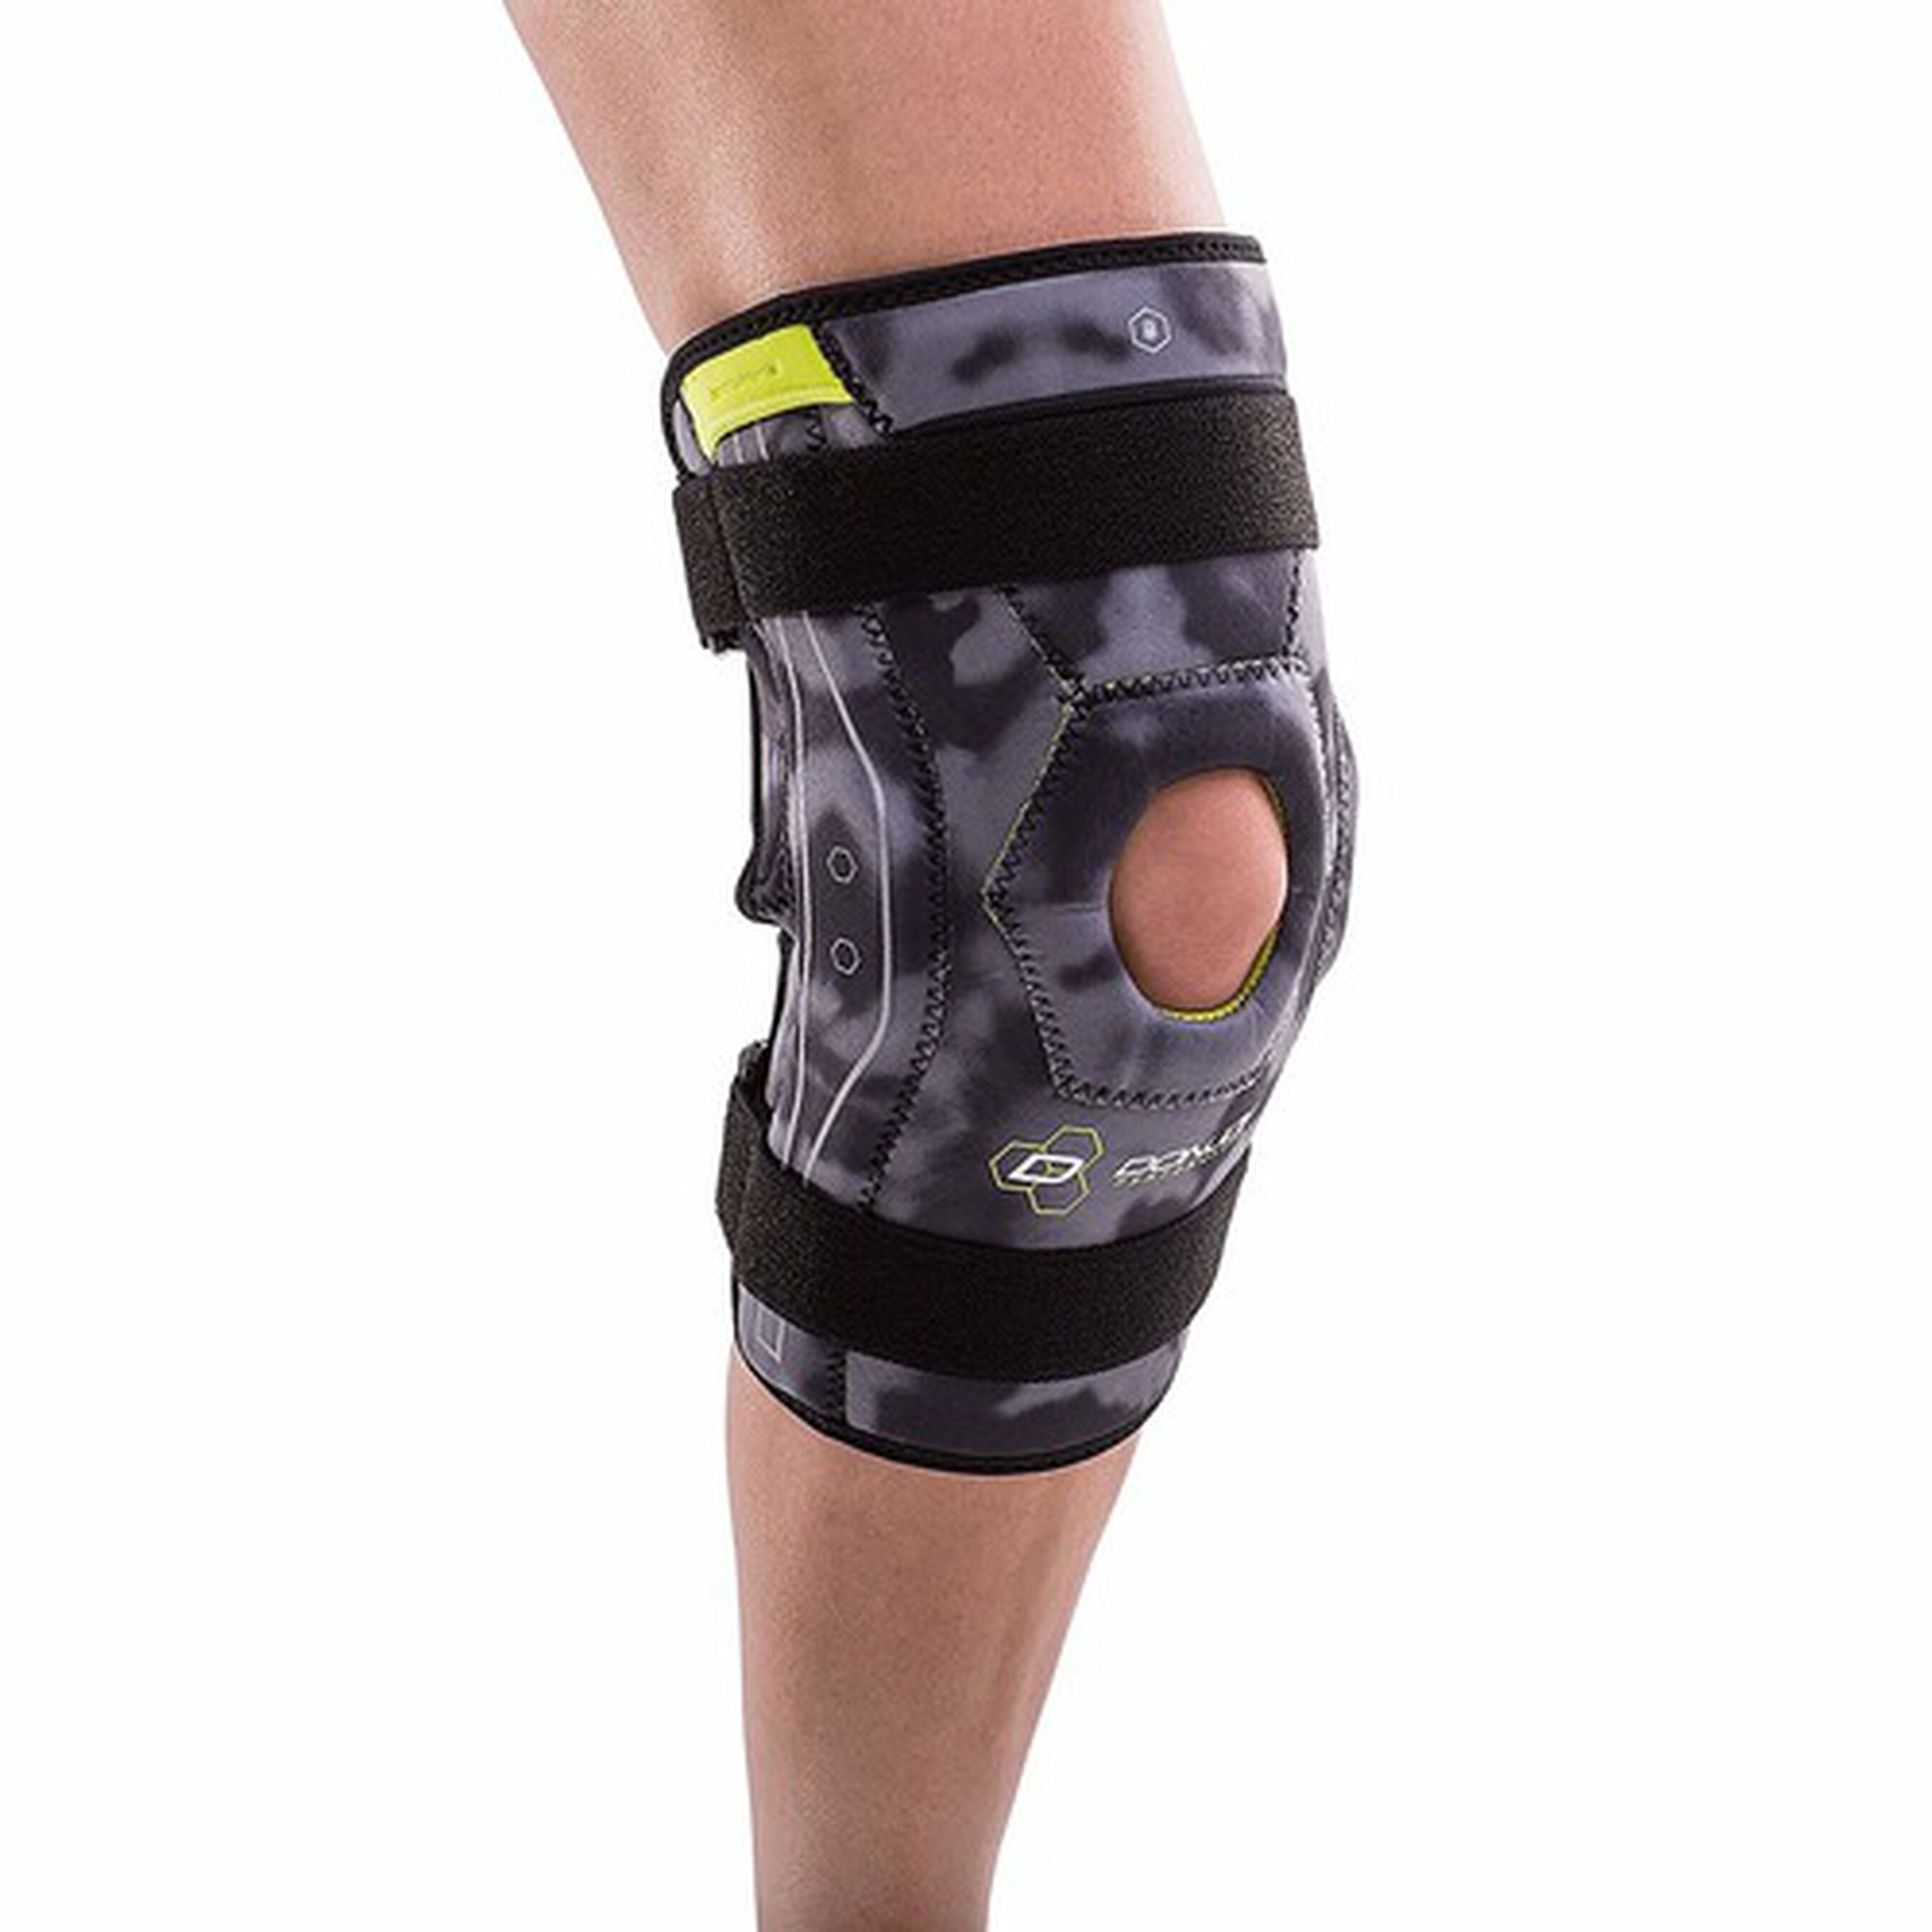 Donjoy Performance Bionic Knee Brace Camo 